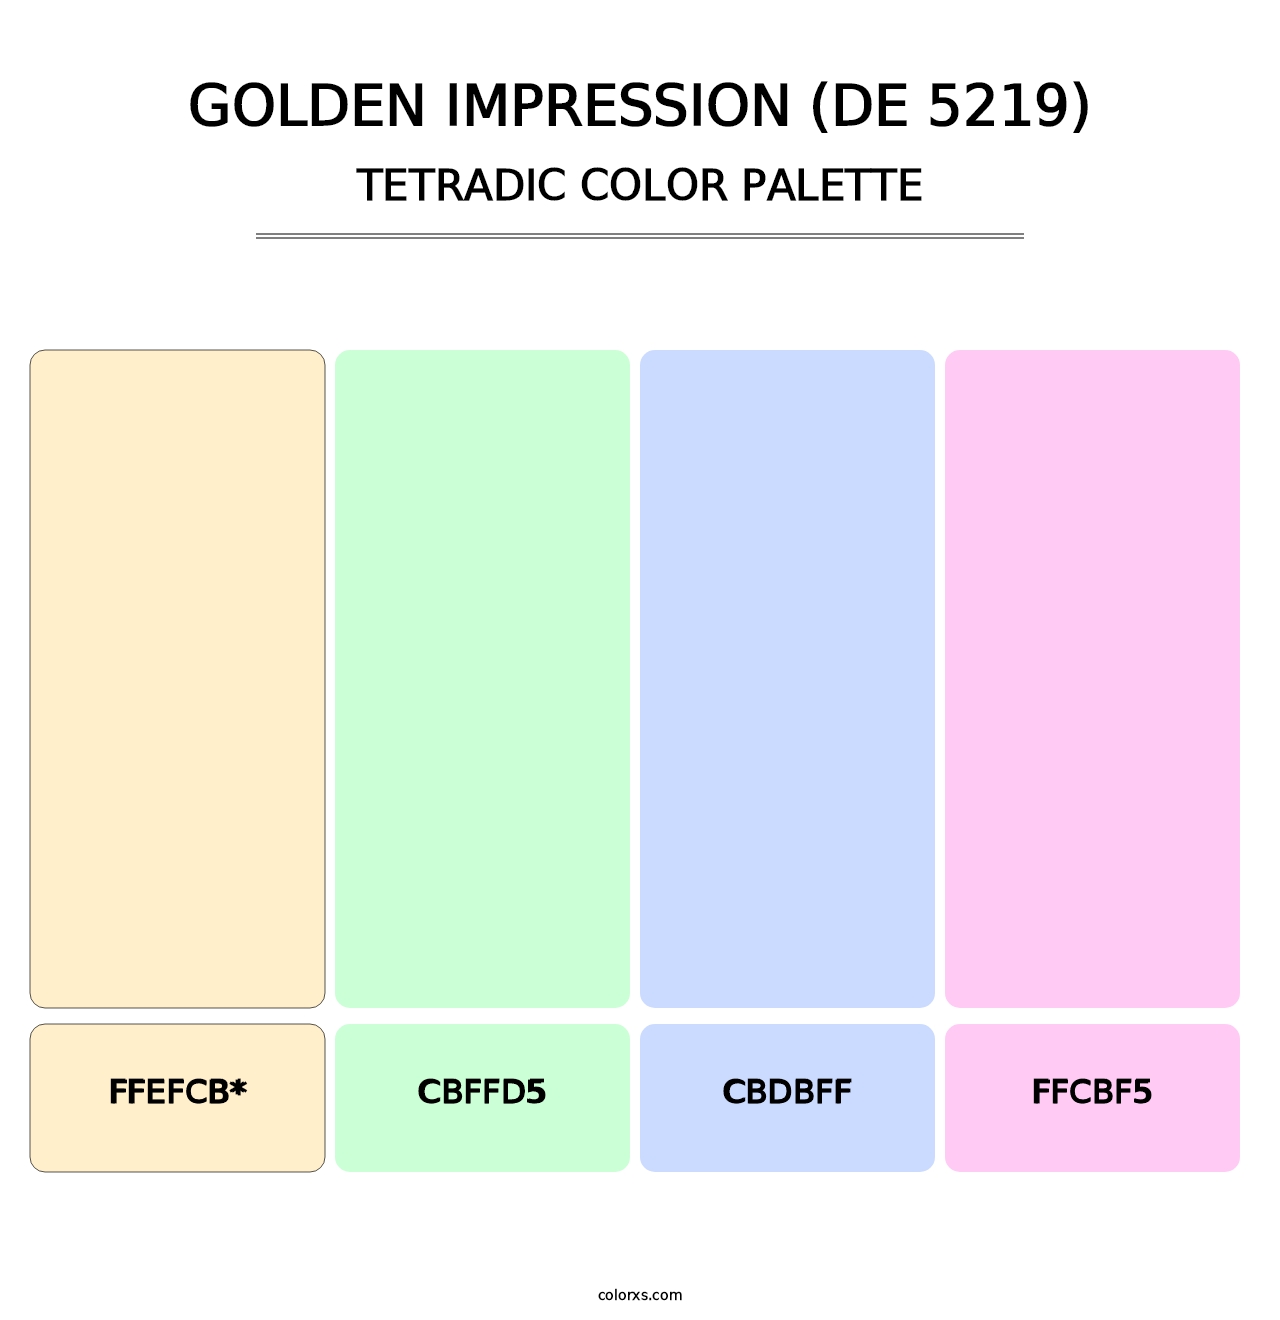 Golden Impression (DE 5219) - Tetradic Color Palette